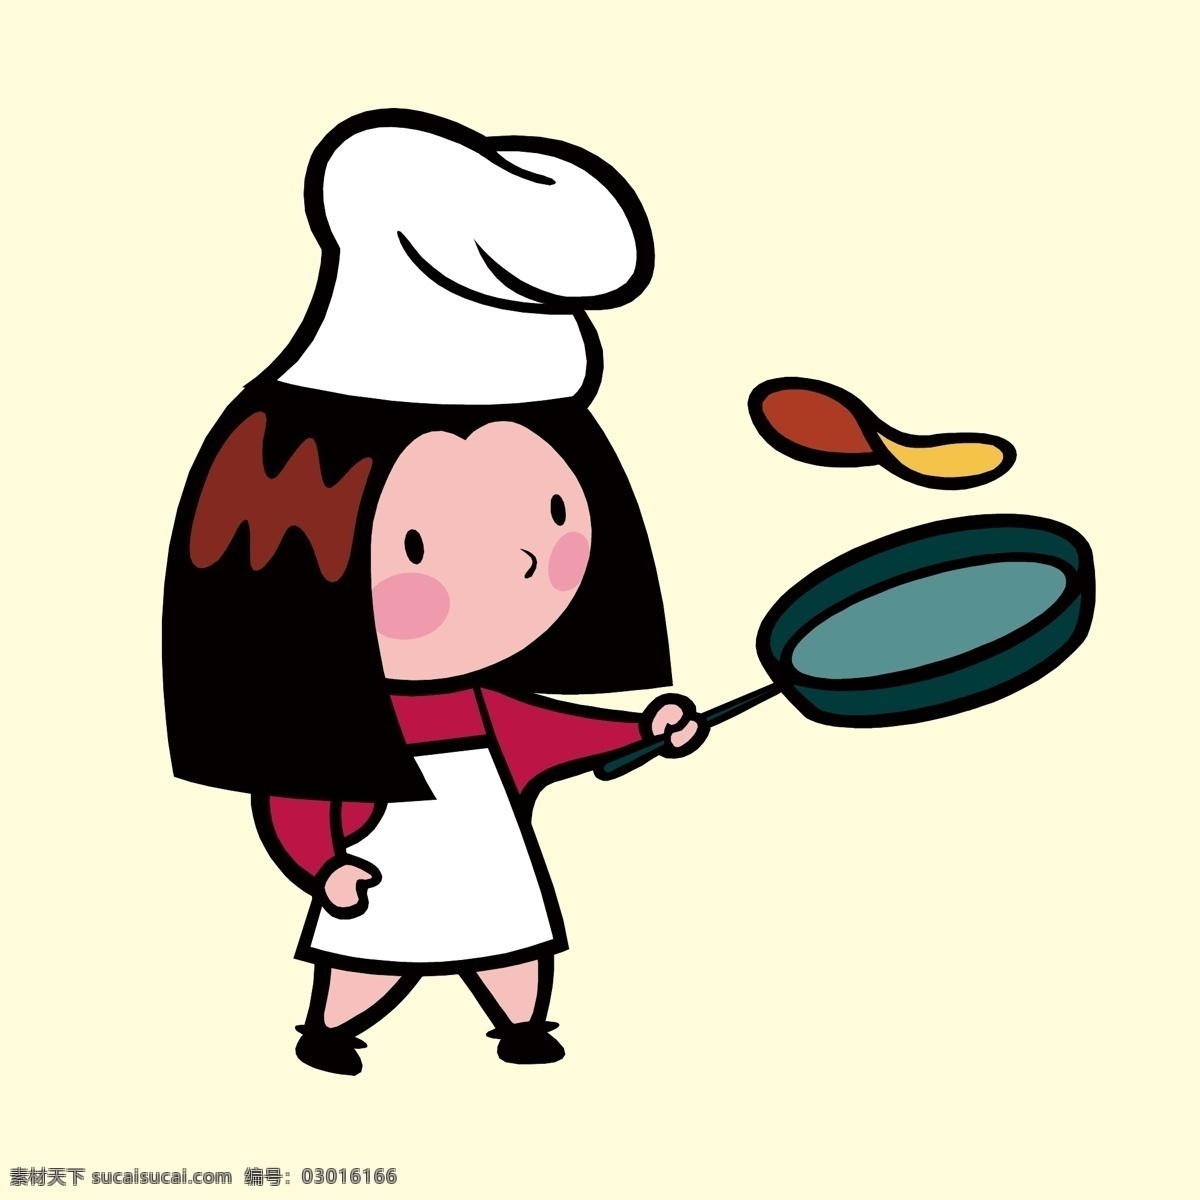 厨师炒菜 卡通厨师 女厨师 厨师煎蛋 厨师烹饪 家庭主妇 女人做饭 职业人物插画 卡通职业人物 人物插画设计 男性人物设计 女性人物设计 儿童人物设计 矢量卡通人物